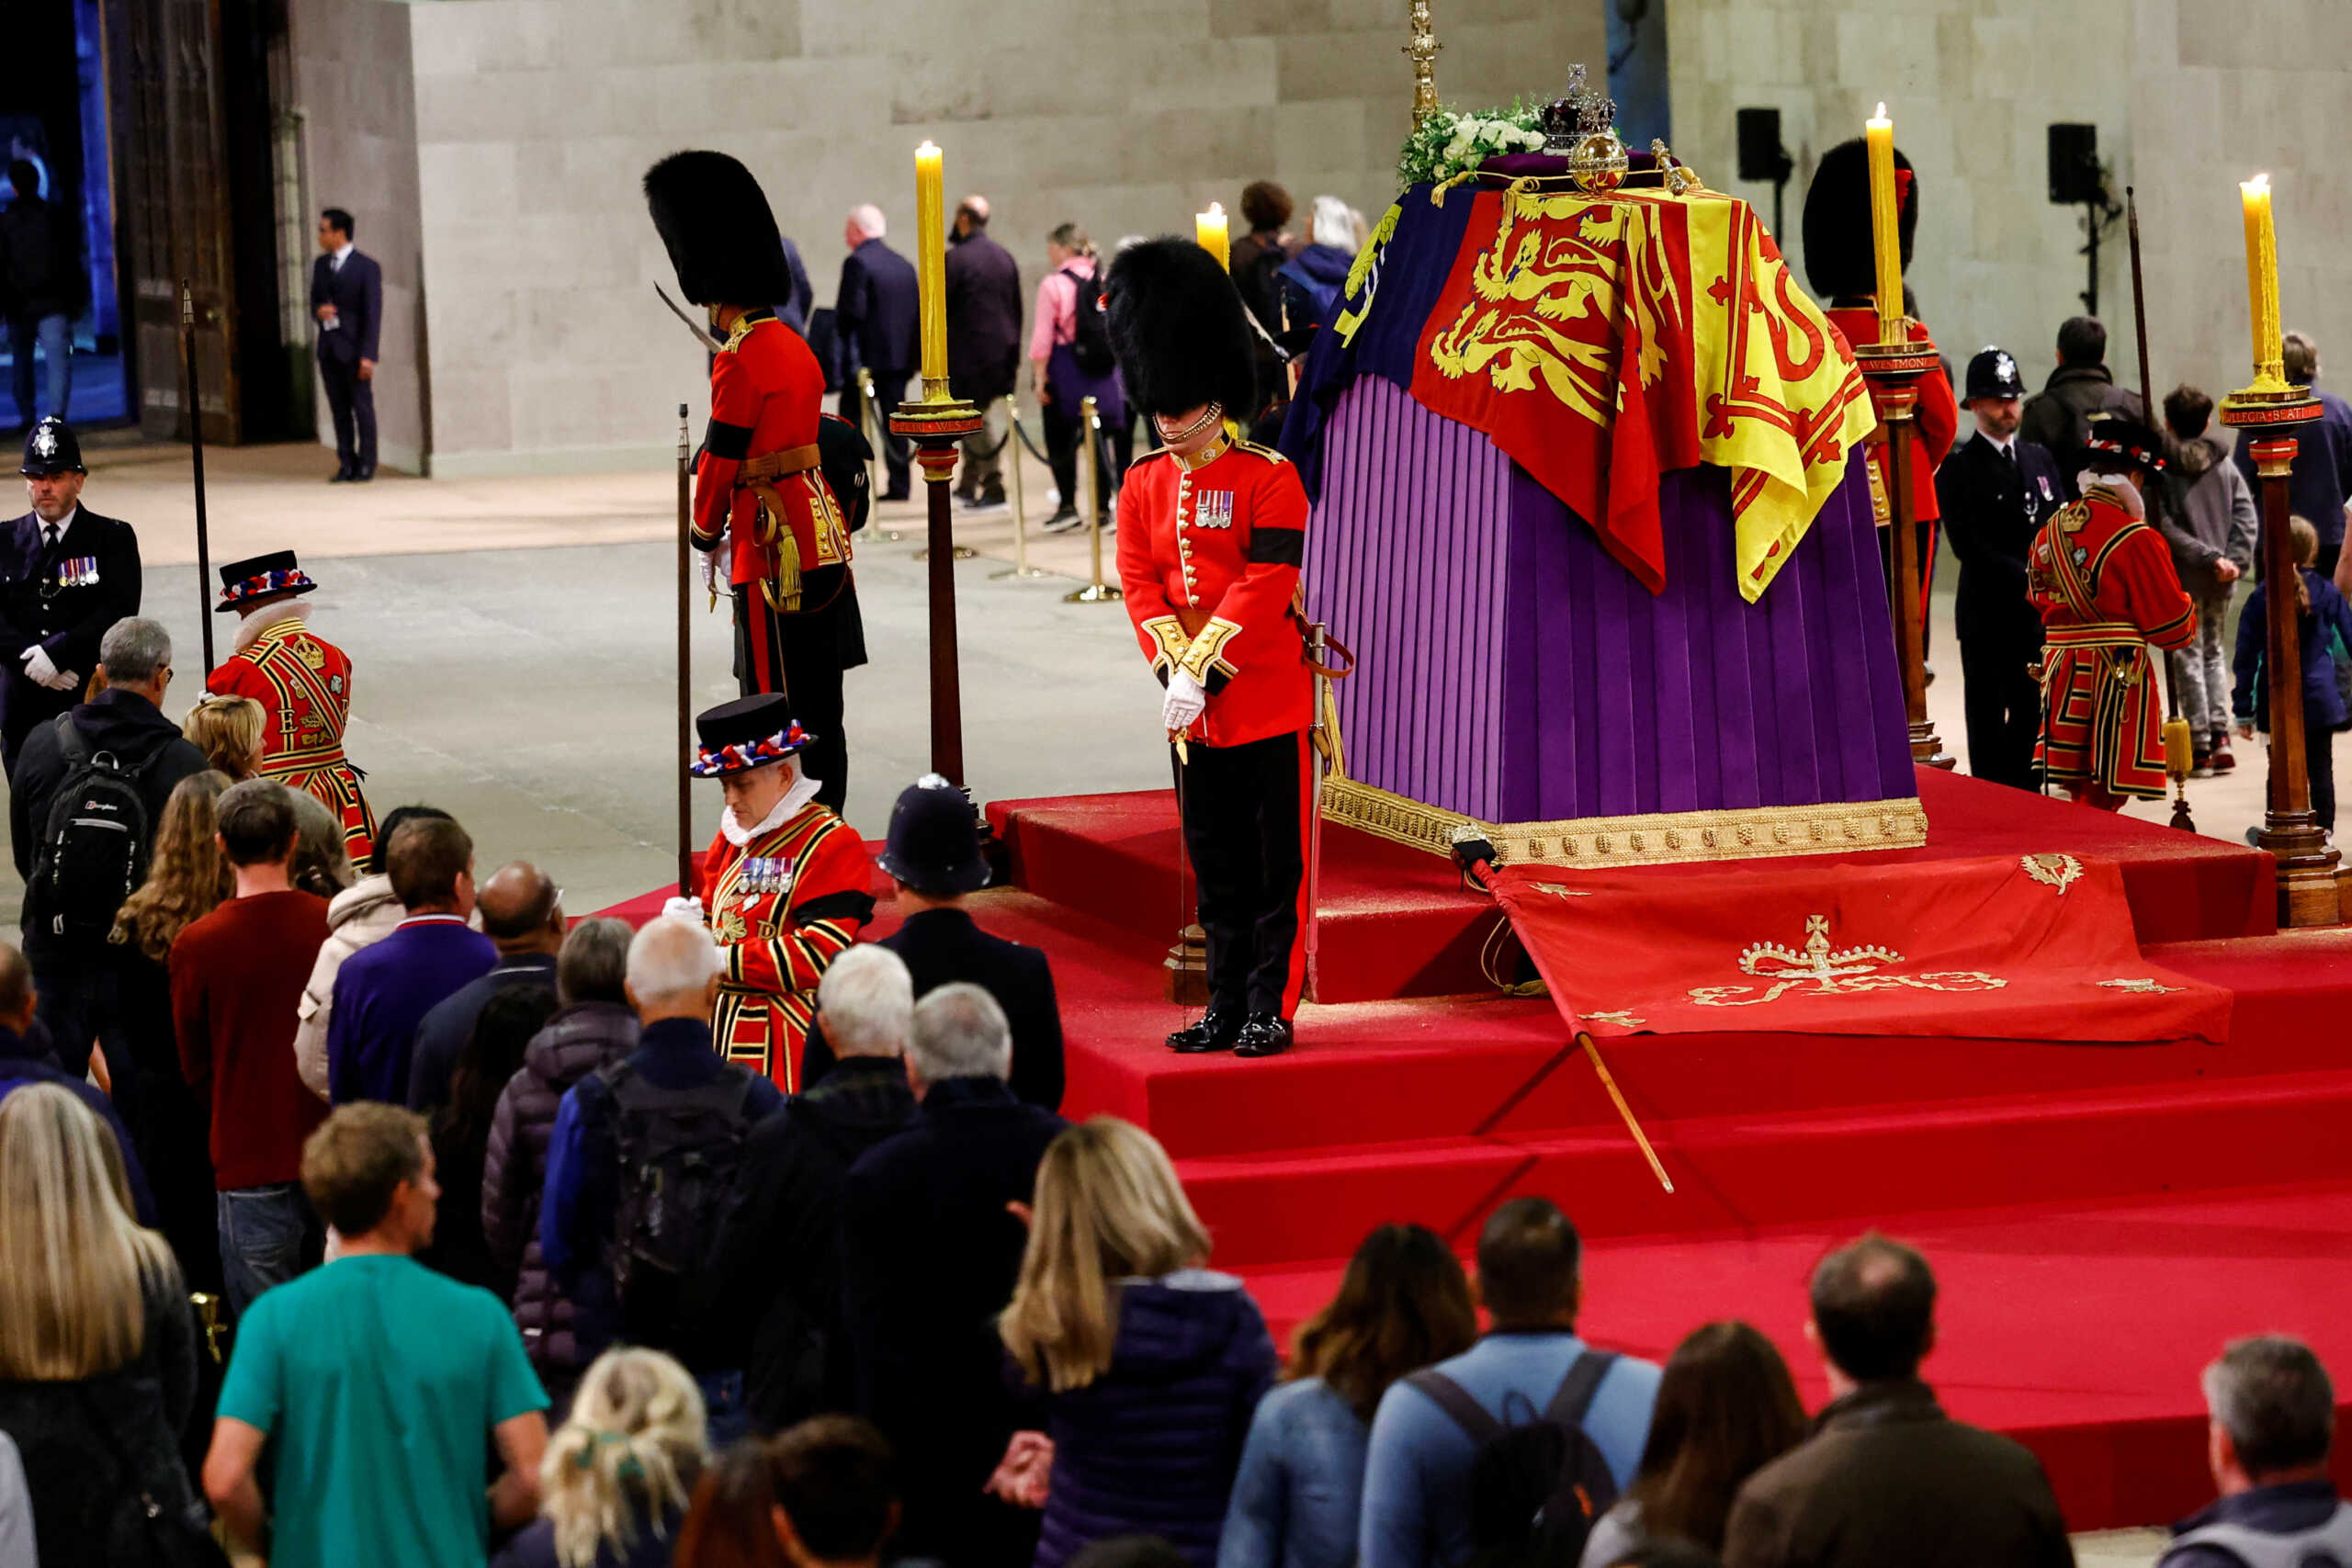 Κηδεία βασίλισσας Ελισάβετ: Τελευταίος αποχαιρετισμός – Σε παγκόσμια μετάδοση όλη η τελετή, ενταφιασμός χωρίς κάμερες